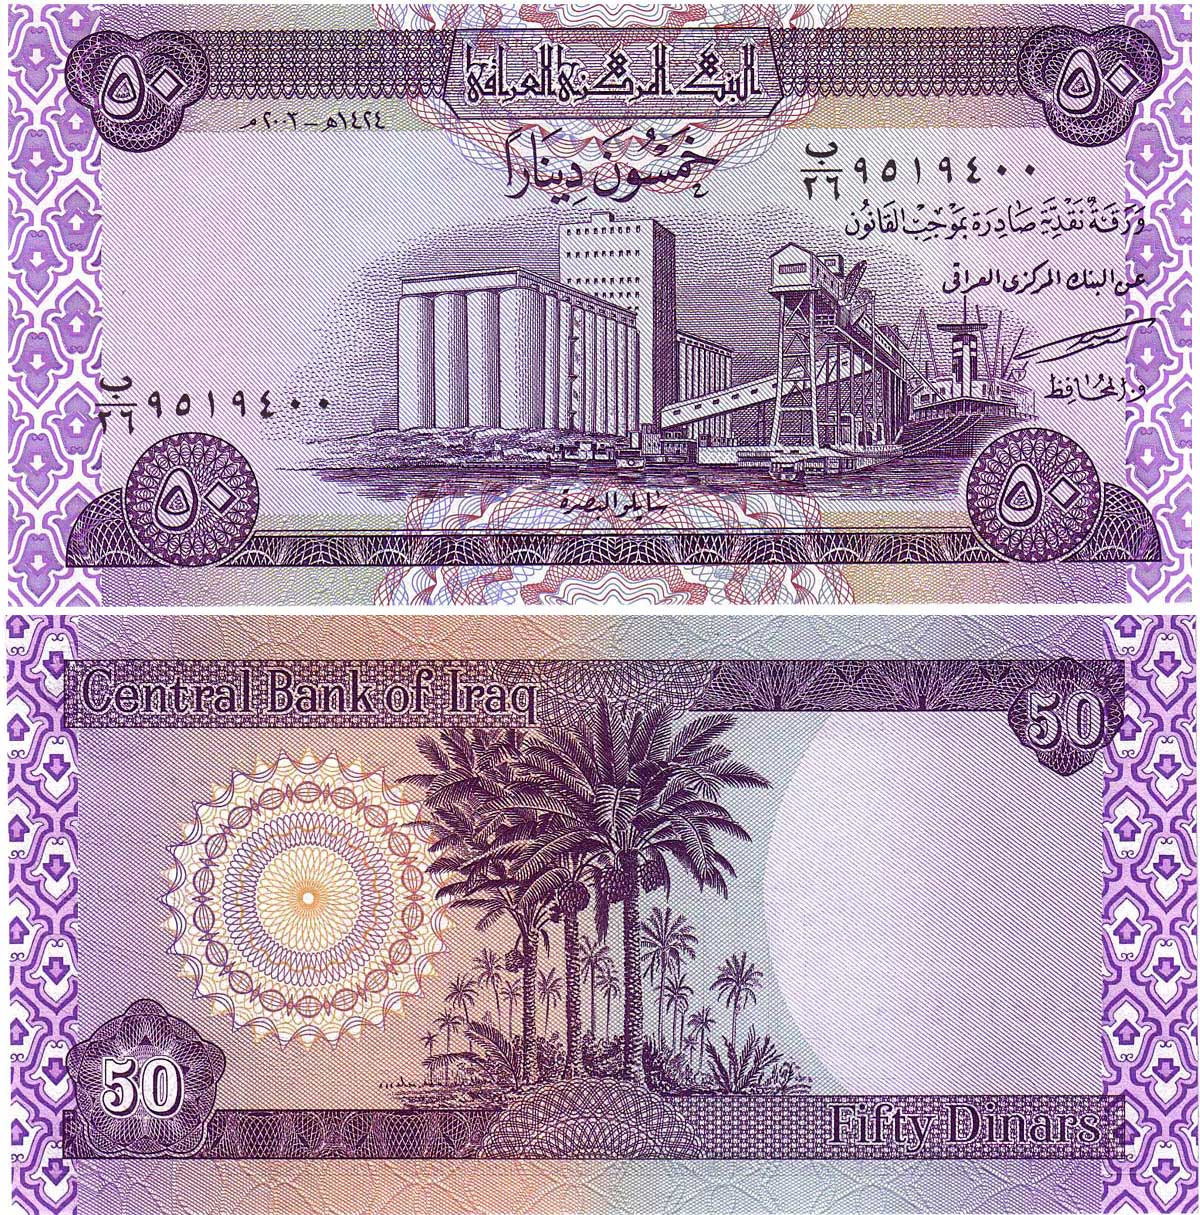 イラクディナール... Iraqi dinar , and weakening the dinar back